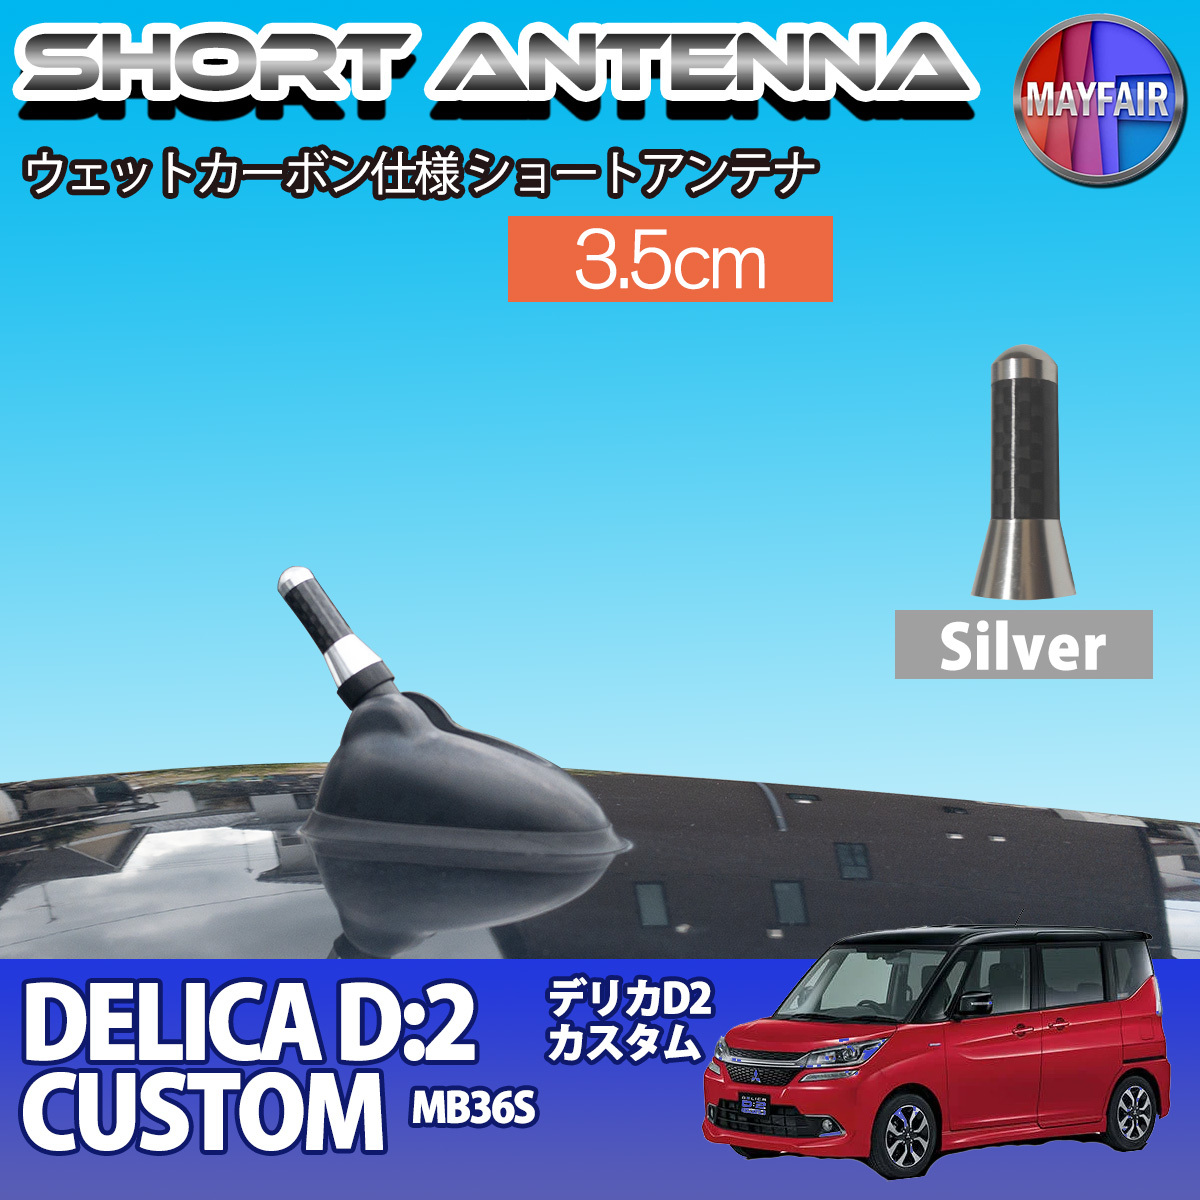 1】 デリカ D2 カスタム MB36S ショートアンテナ 純正交換 ラジオ アンテナ 車用 カーボン 3.5cm シルバー